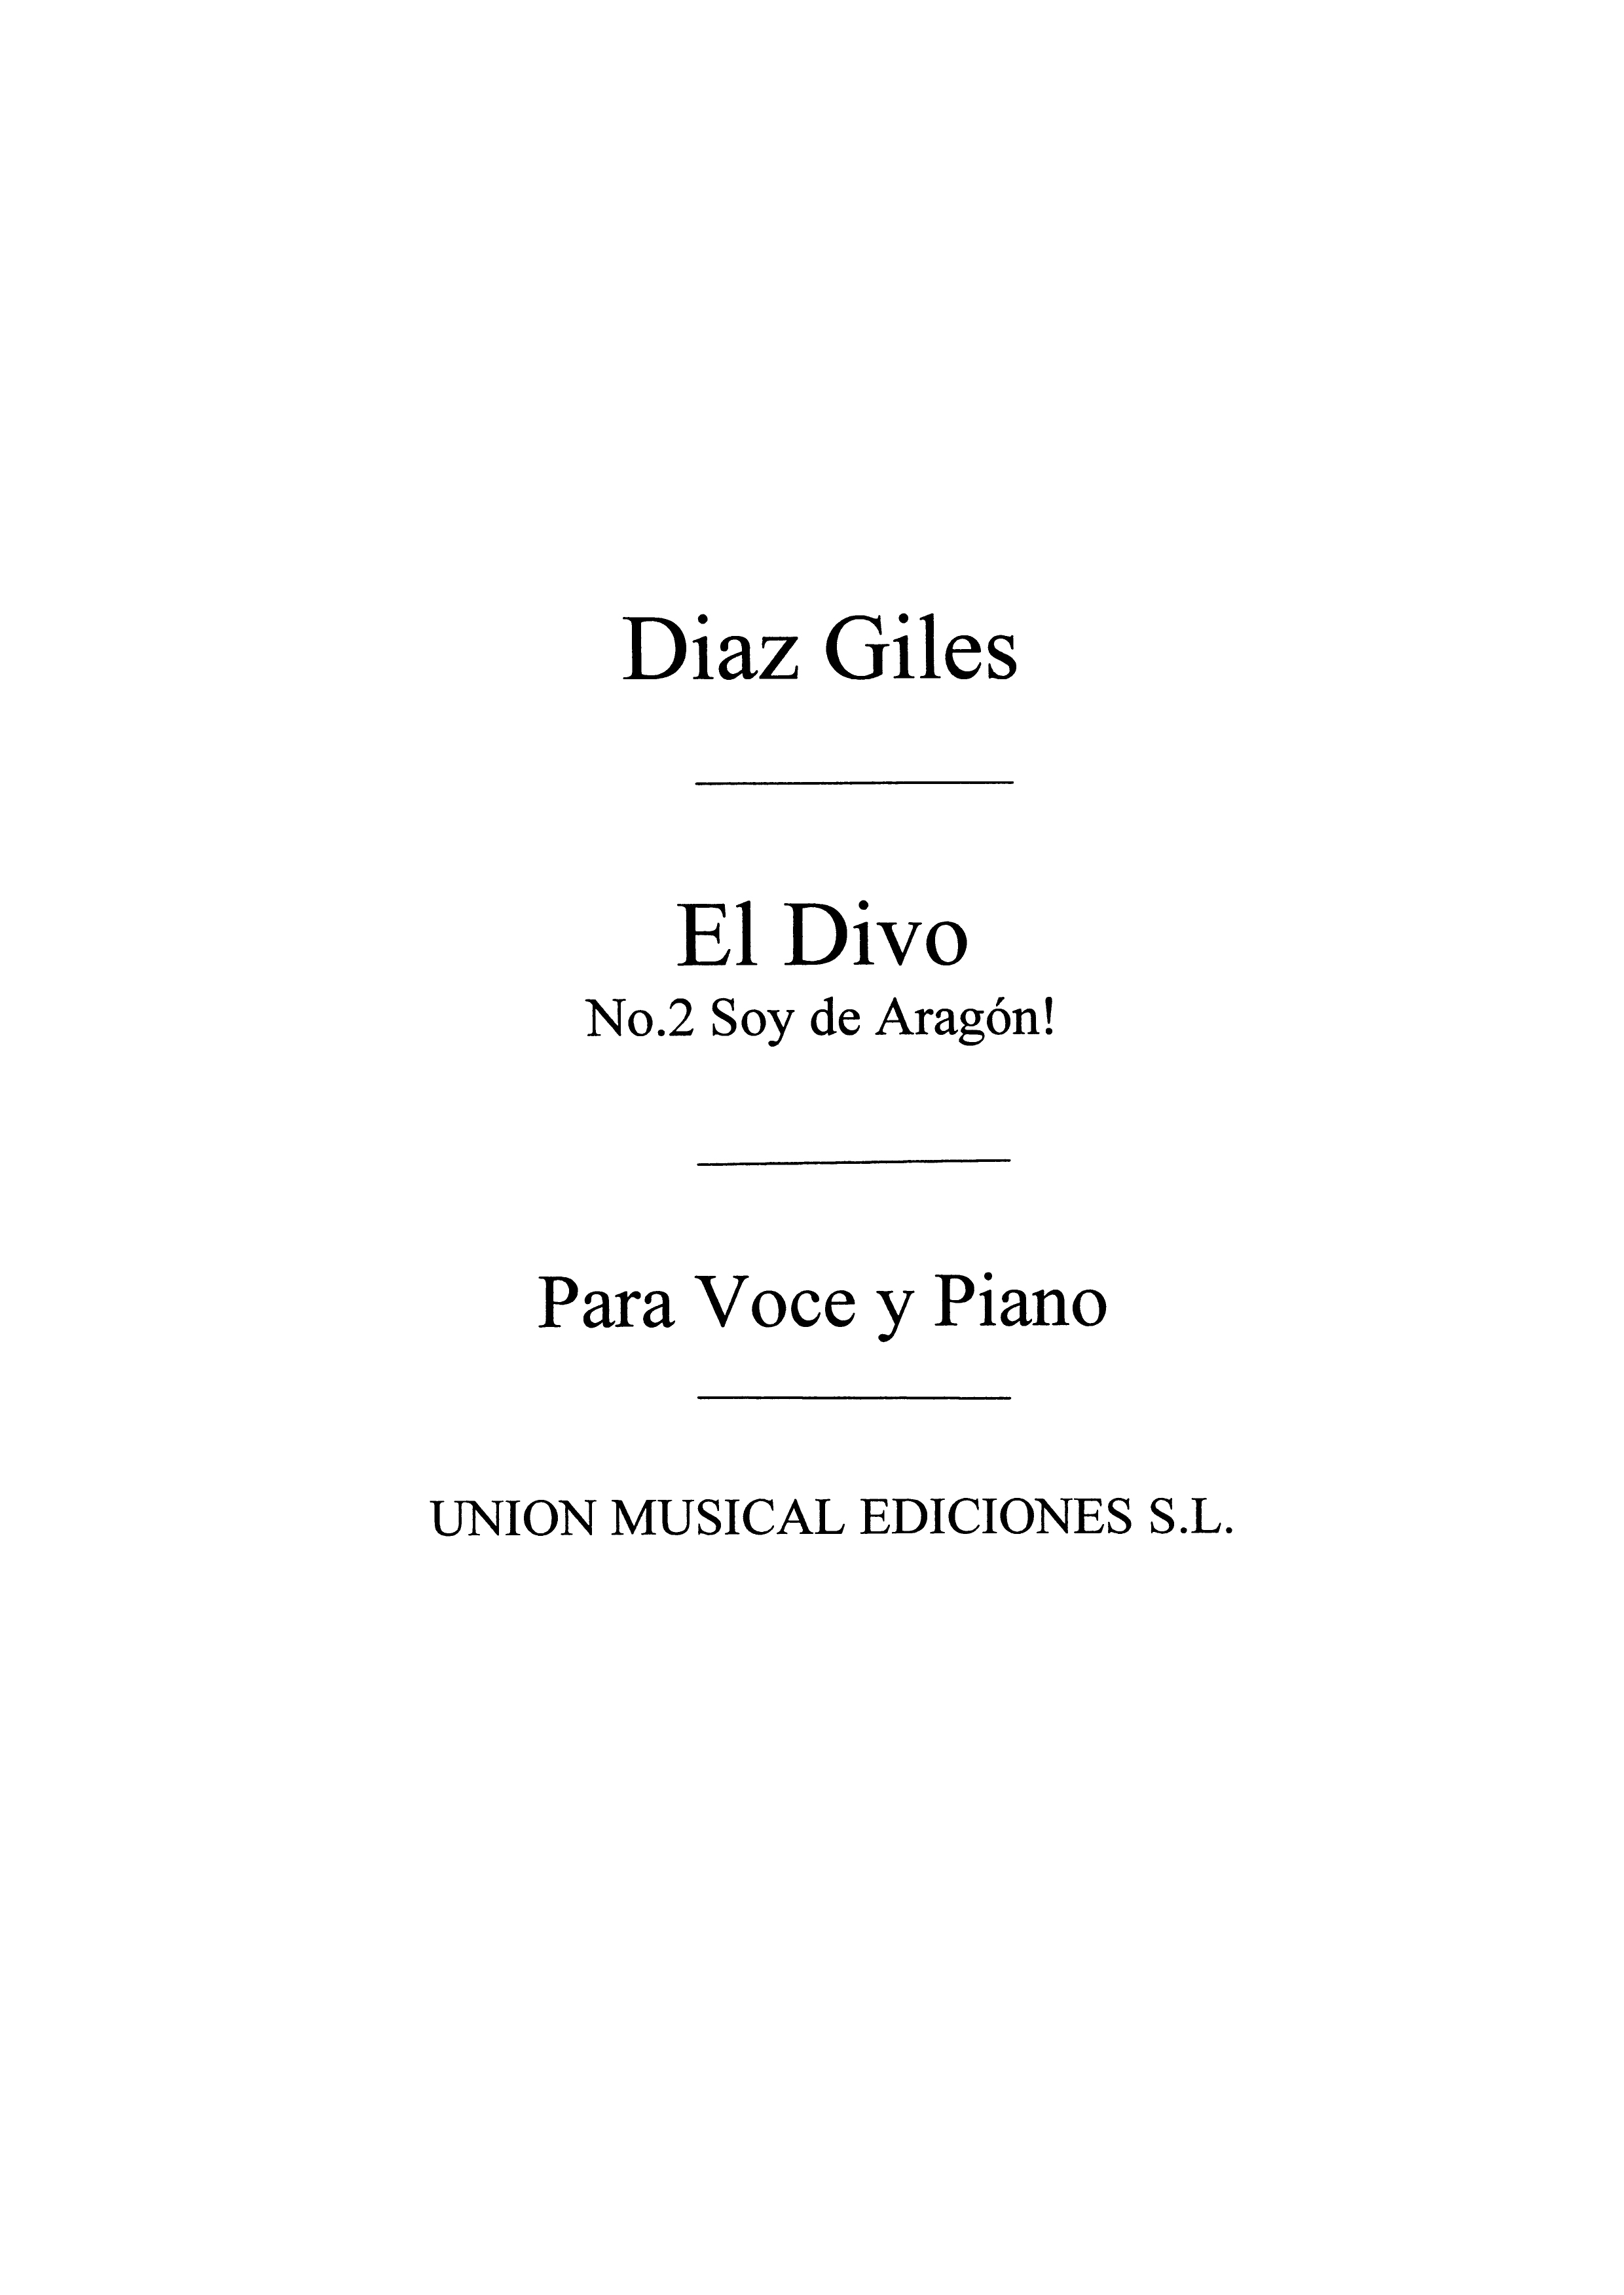 Fernando Diaz-Giles: El Divo No.2 Soy En Aragon: Opera: Score